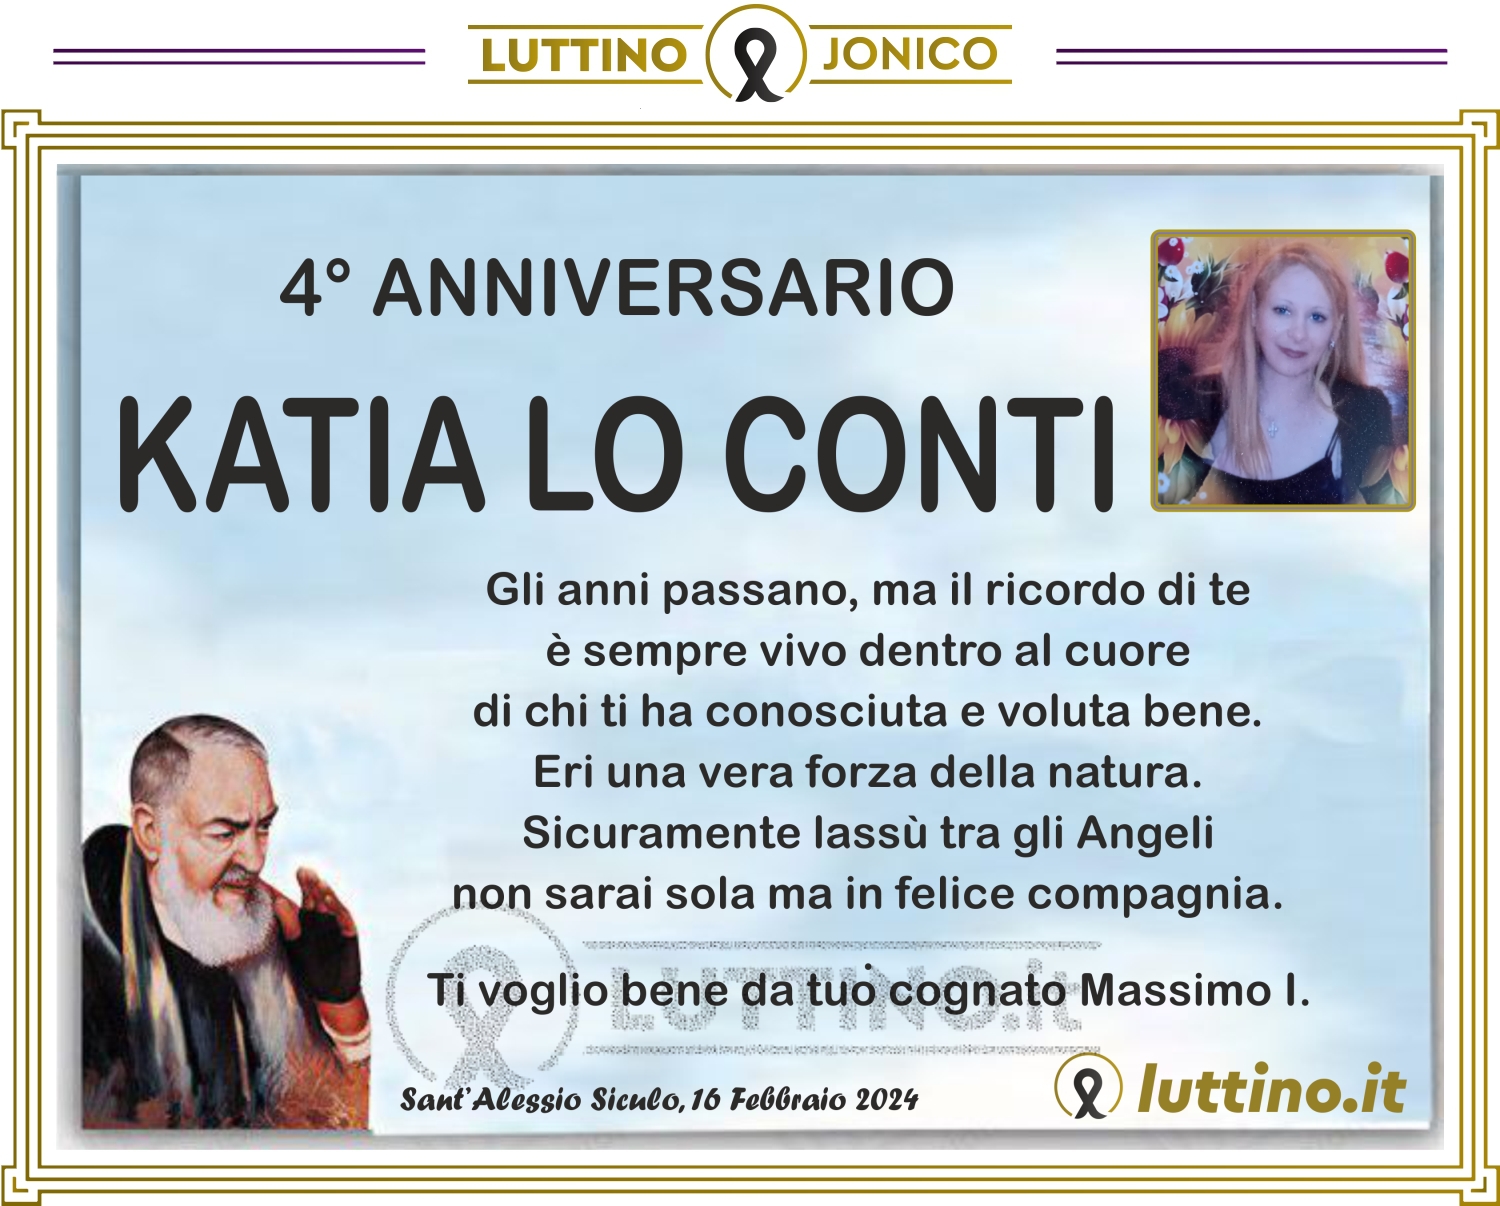 Katia Lo Conti